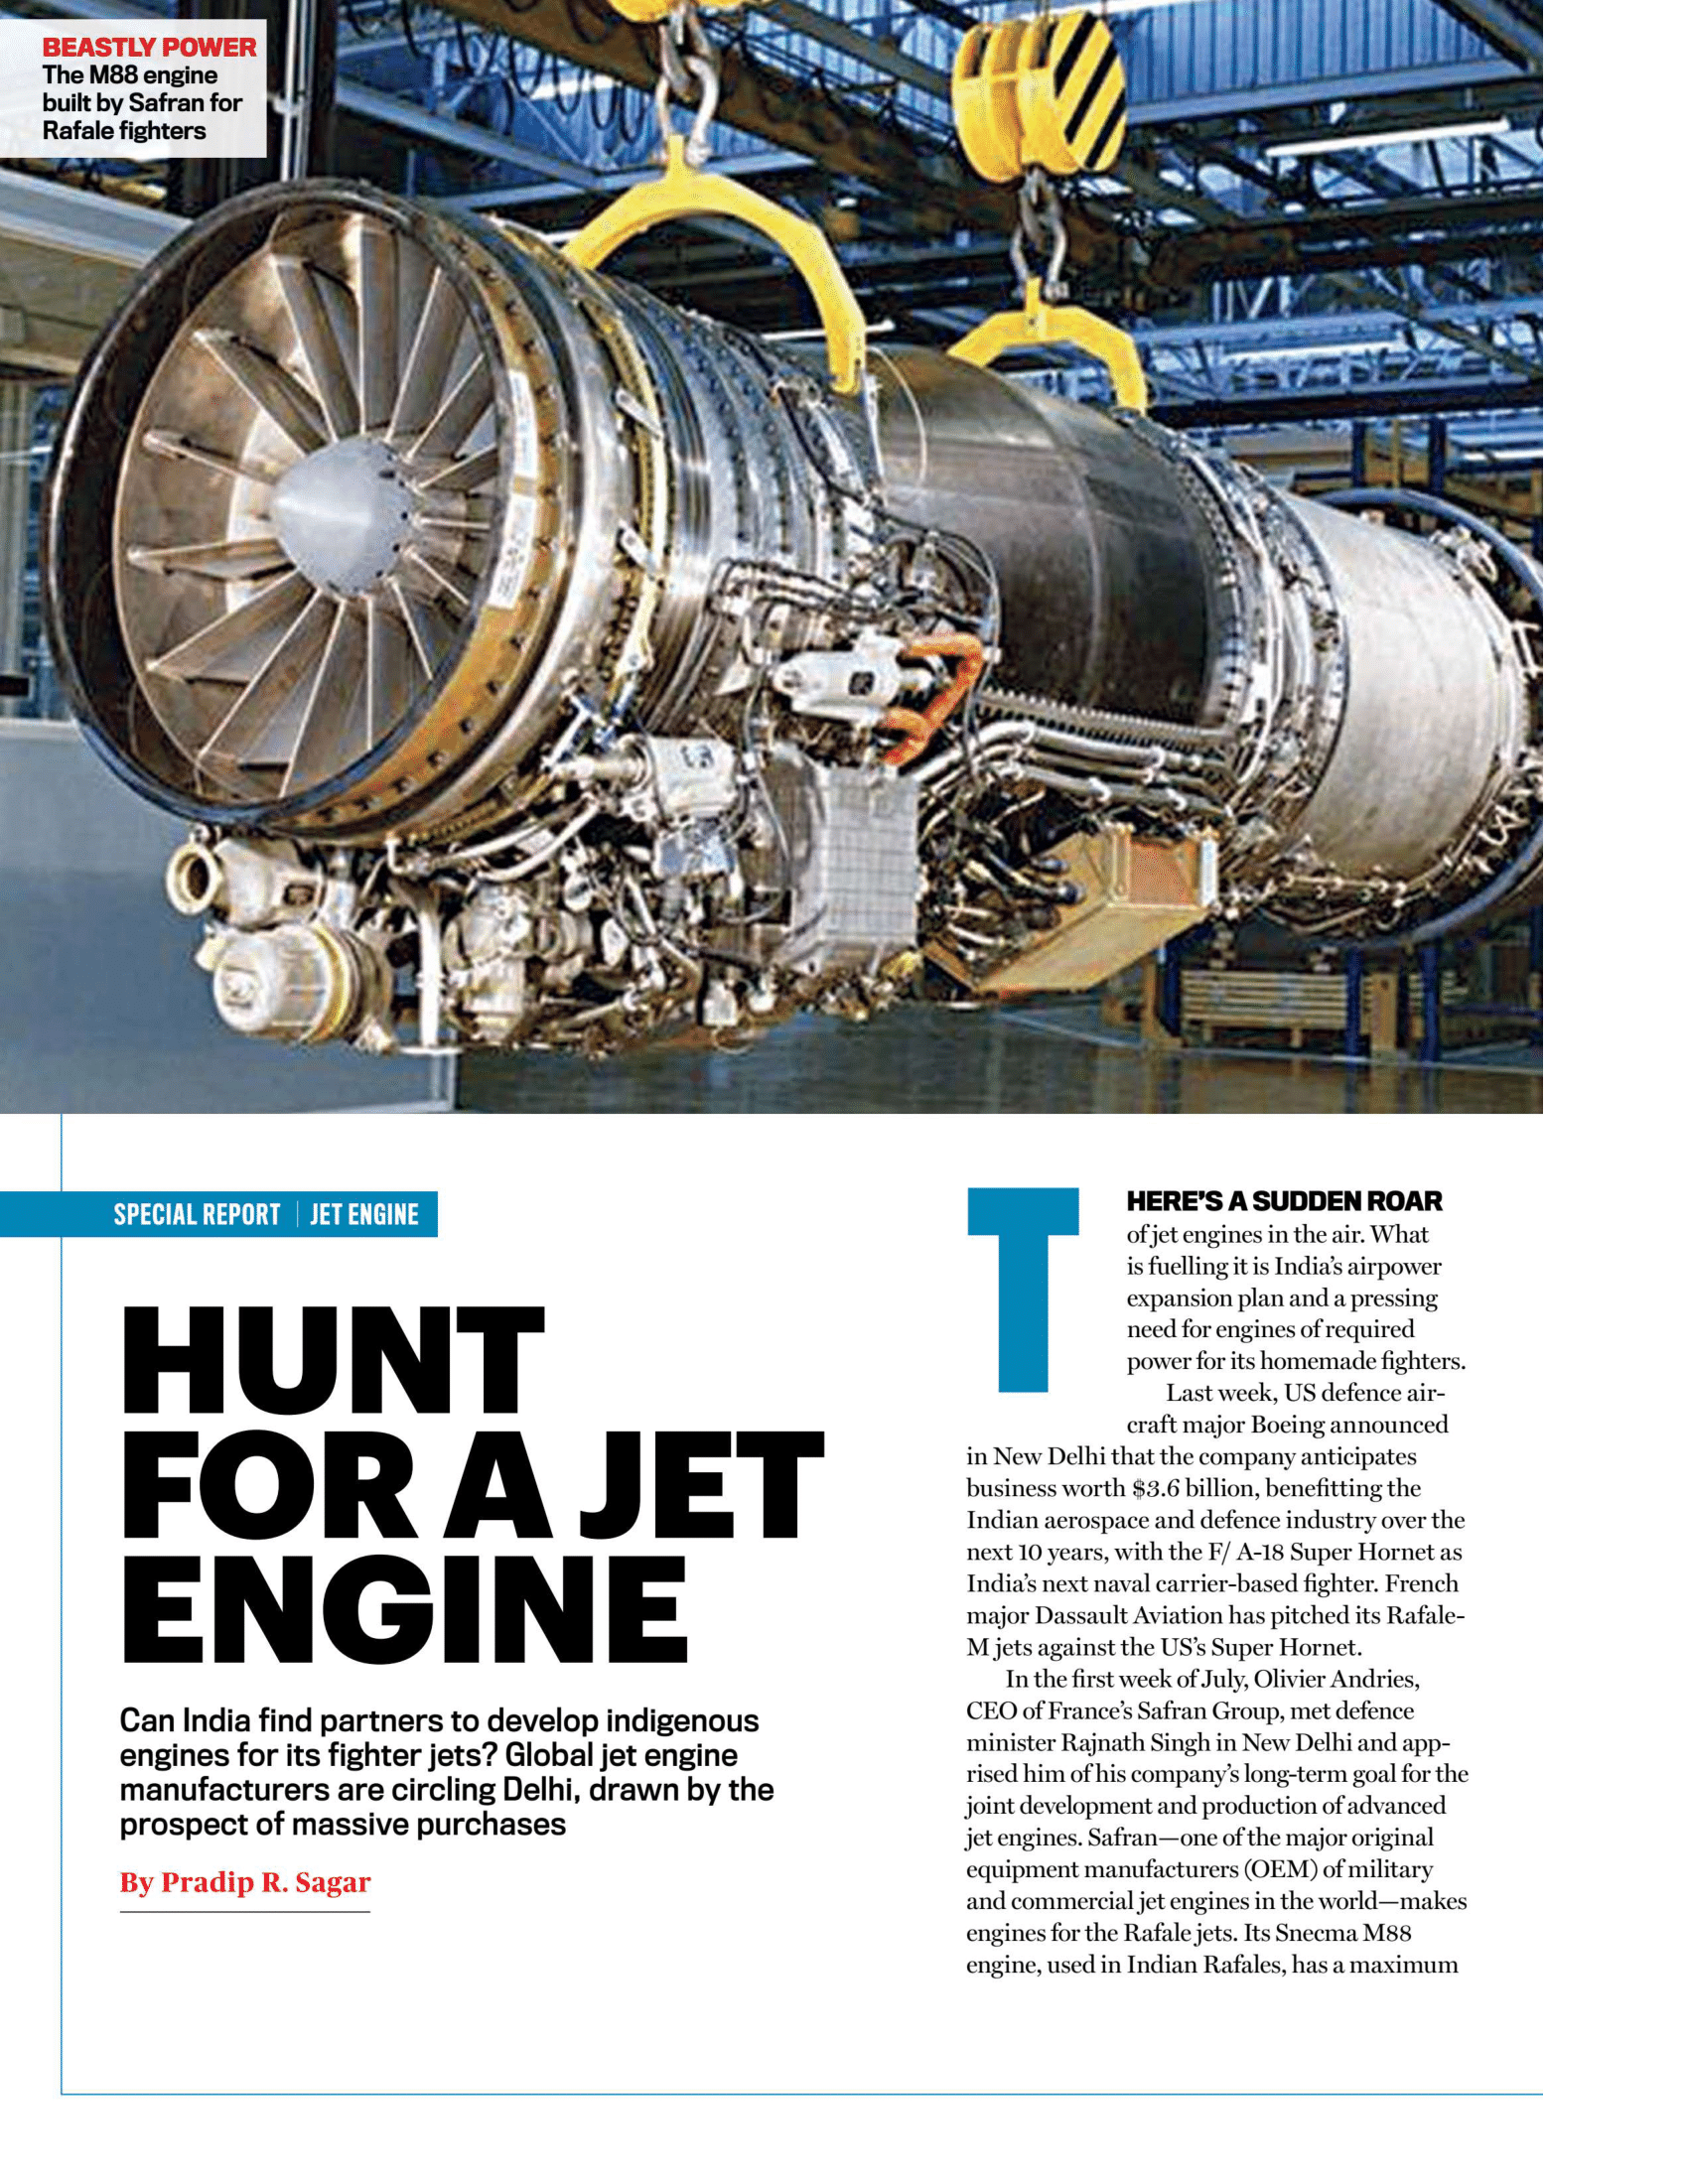 Jet engine-1.png